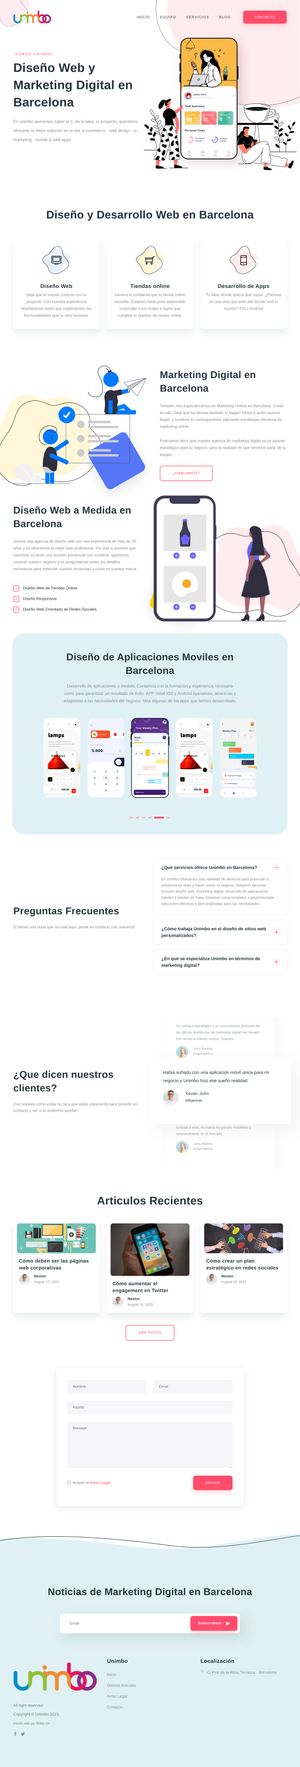 Ejemplo de diseño web completo en Colmenar Viejo: Muestra la página web profesional que ha diseñado Ridaly para unimbo